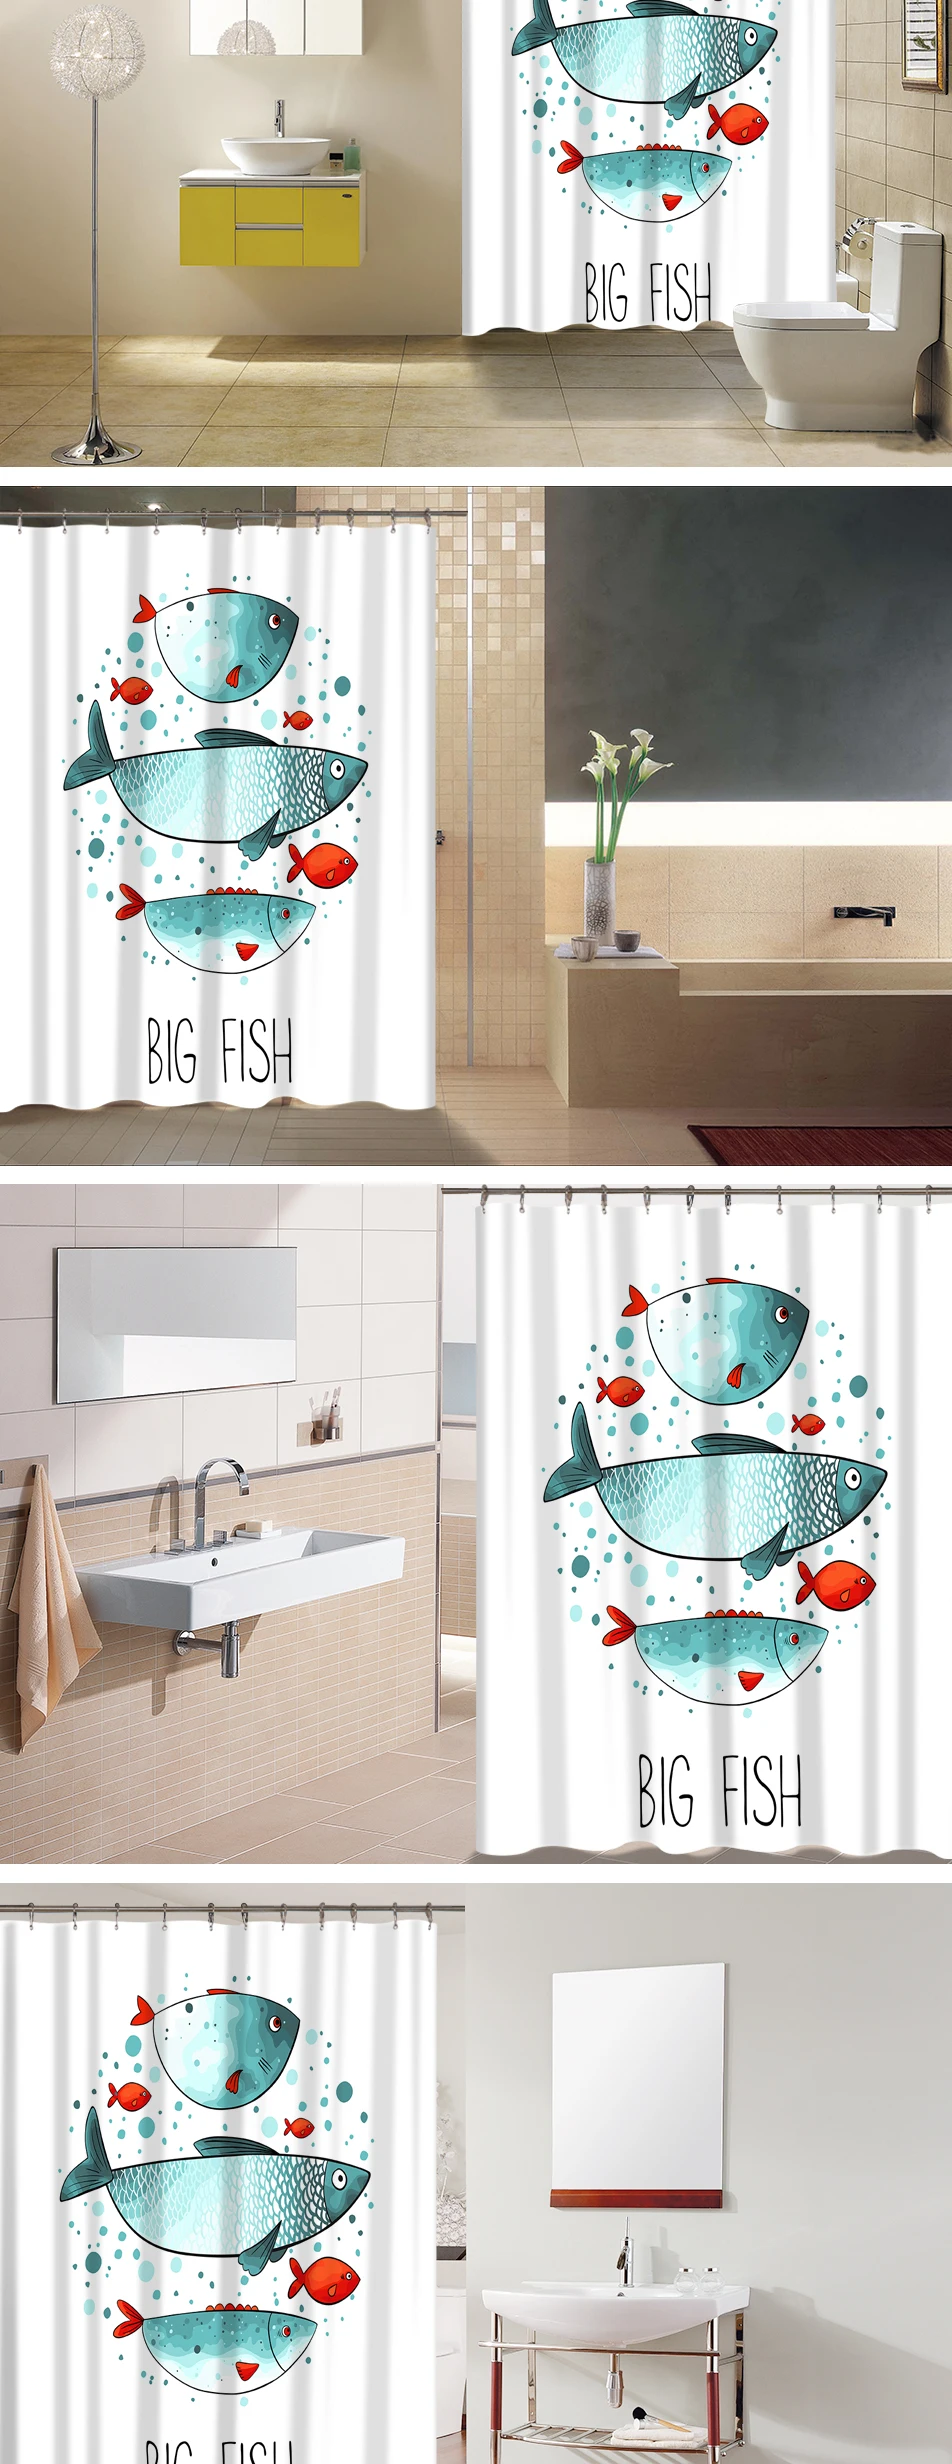 Океанский стиль, рисунок рыбы, полиэфирная ткань, водонепроницаемая занавеска для ванной, нескользящий коврик, набор для декора ванной комнаты отеля, 12 крючков